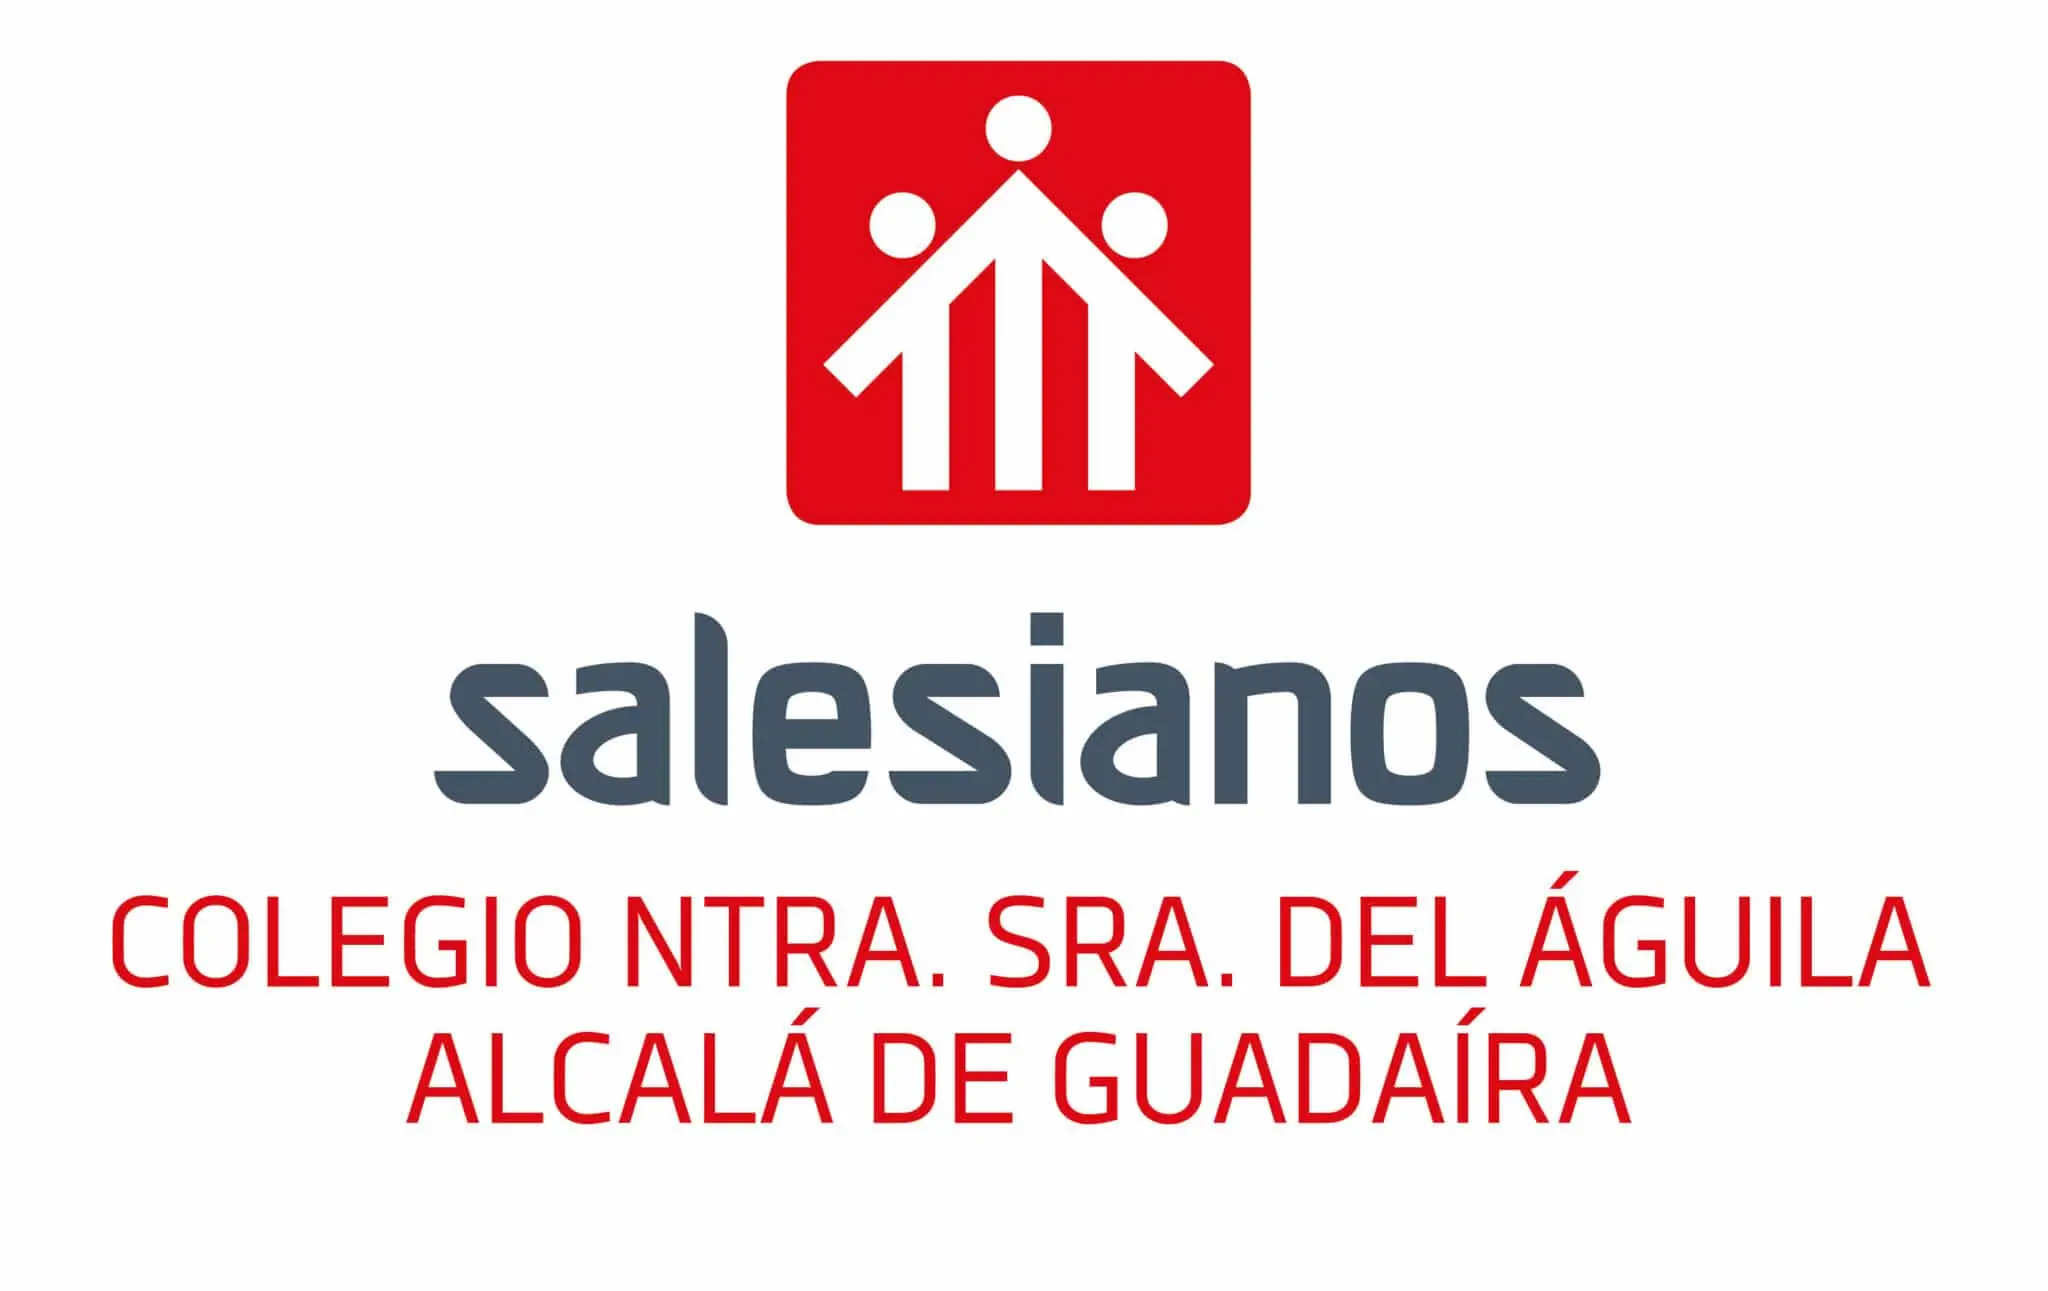 Collaboratos: Salesianos Alcalá de Guadaira